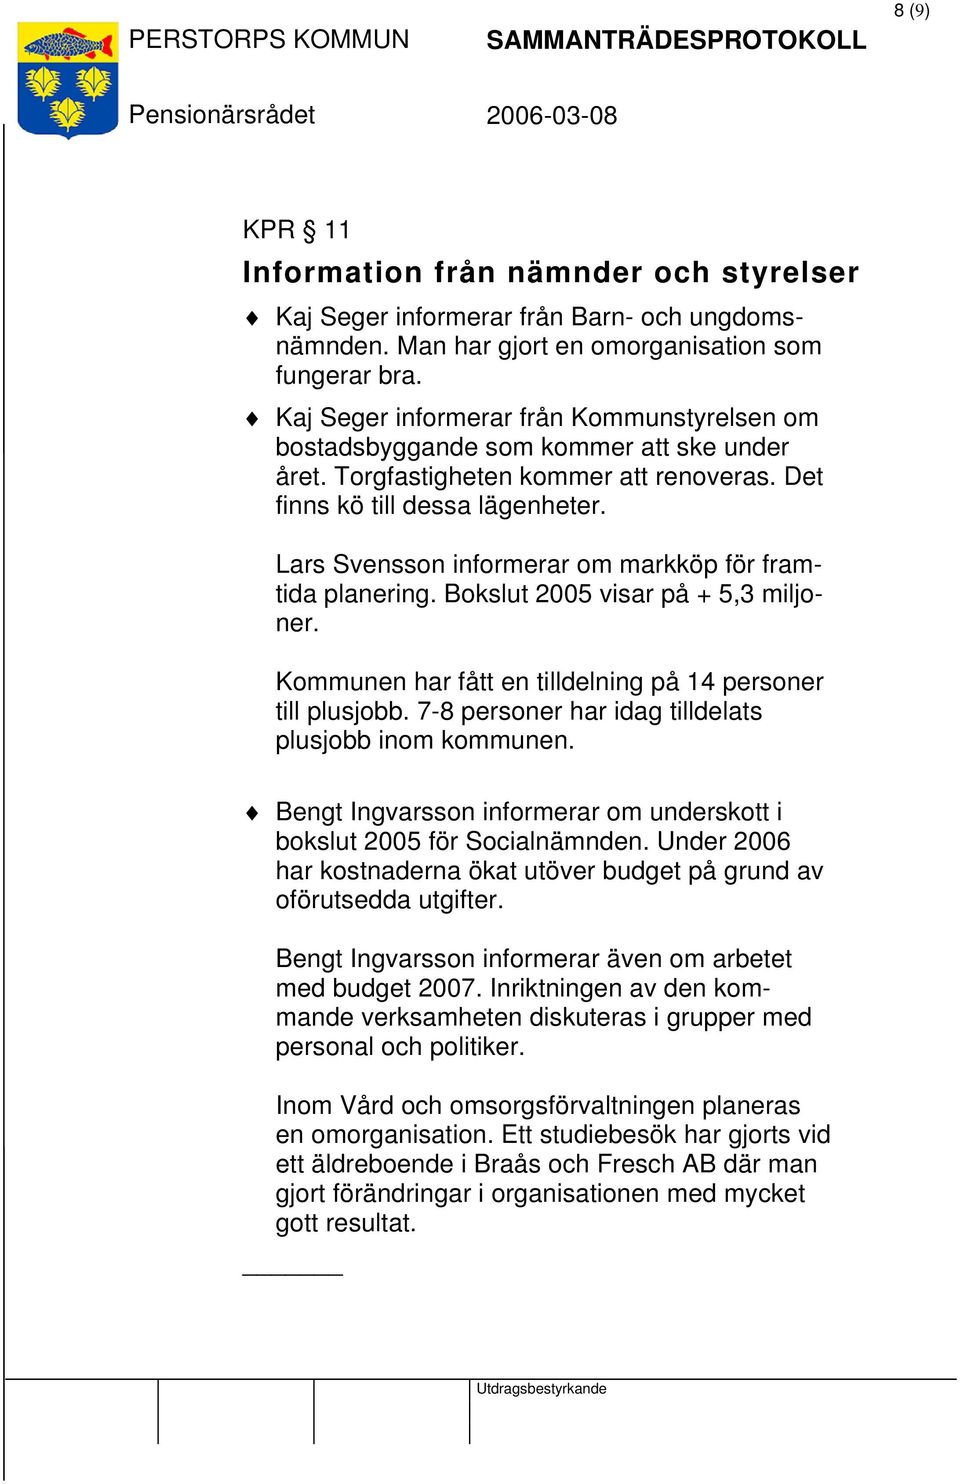 Lars Svensson informerar om markköp för framtida planering. Bokslut 2005 visar på + 5,3 miljoner. Kommunen har fått en tilldelning på 14 personer till plusjobb.